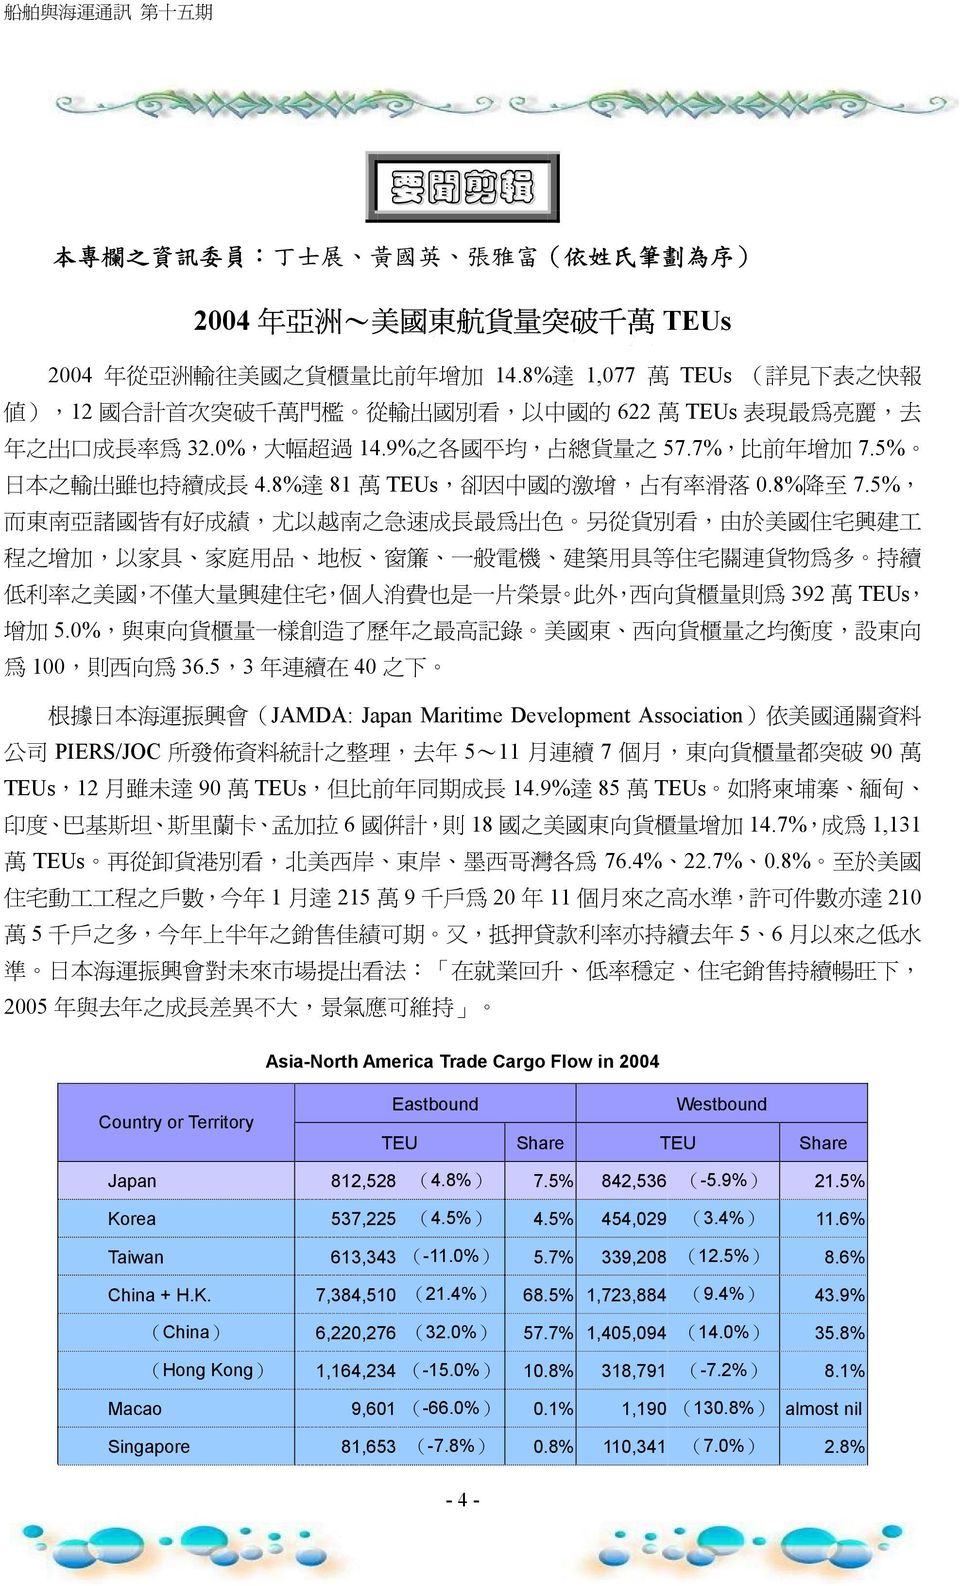 5% 日 本 之 輸 出 雖 也 持 續 成 長 4.8% 達 81 萬 TEUs, 卻 因 中 國 的 激 增, 占 有 率 滑 落 0.8% 降 至 7.